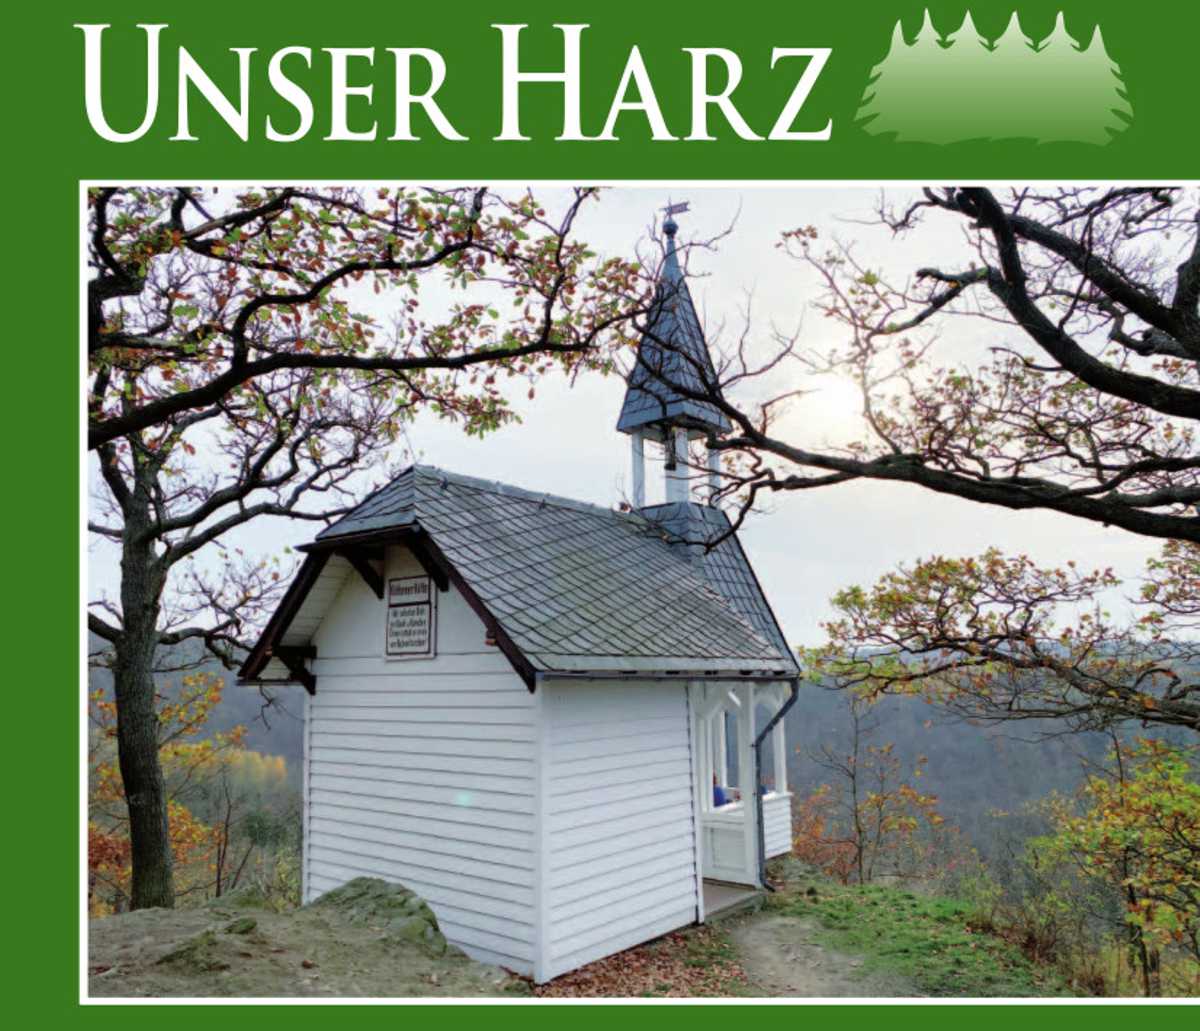 Unser Harz